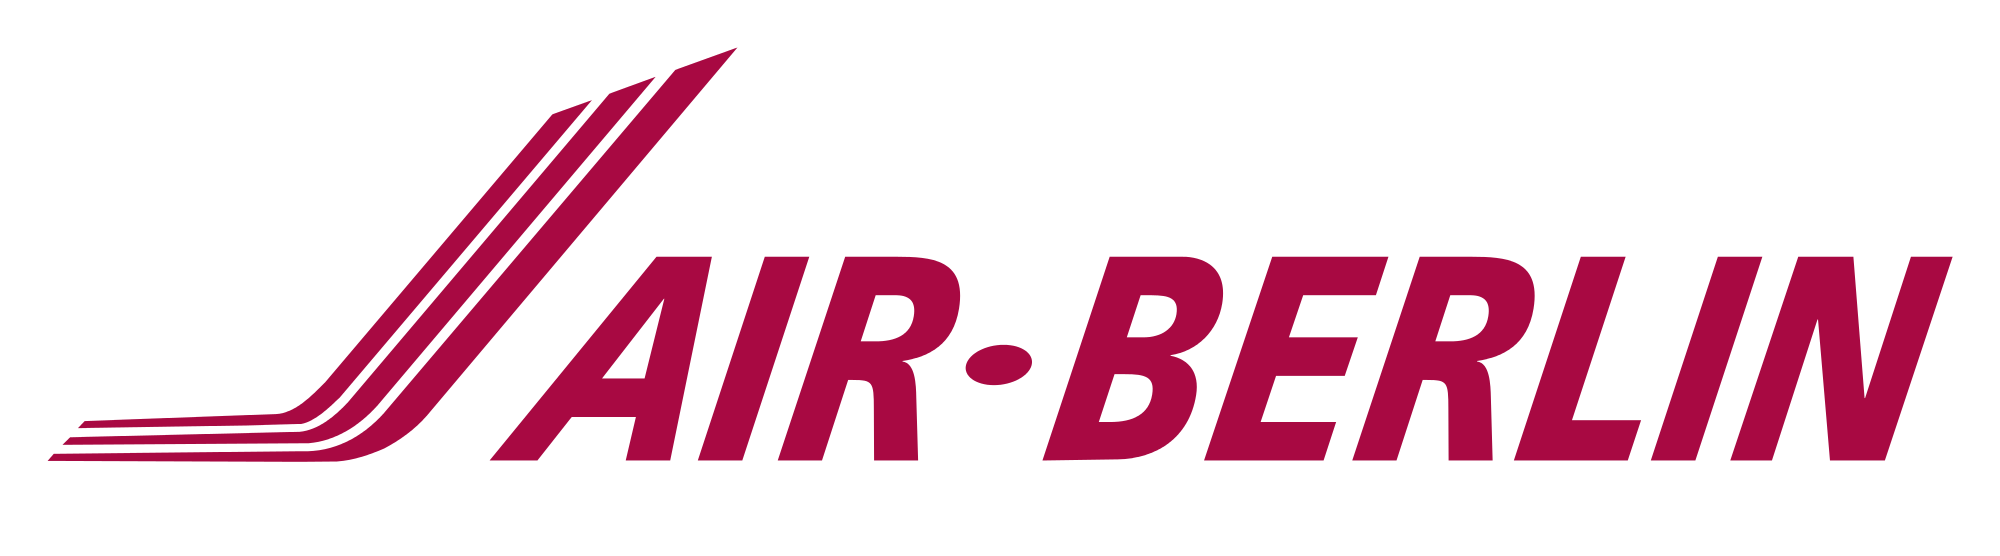 Air France KLM logo vector do